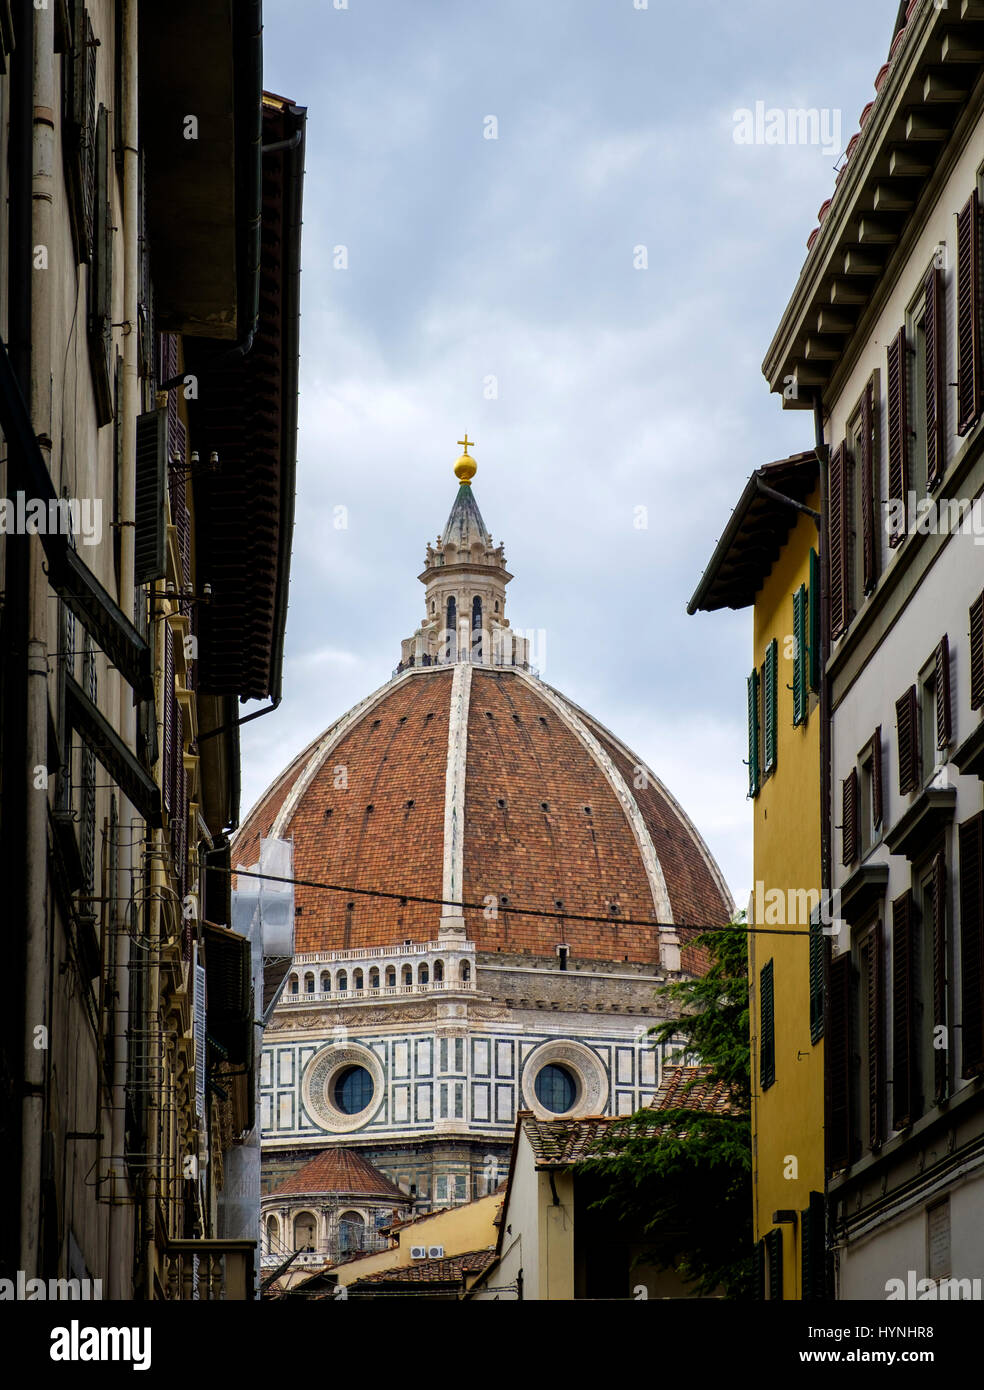 Firenze, Italia - CIRCA NEL MAGGIO 2015: Duomo di Firenze. Cattedrale di Santa Maria del Fiore come si vede dalle strade. Foto Stock